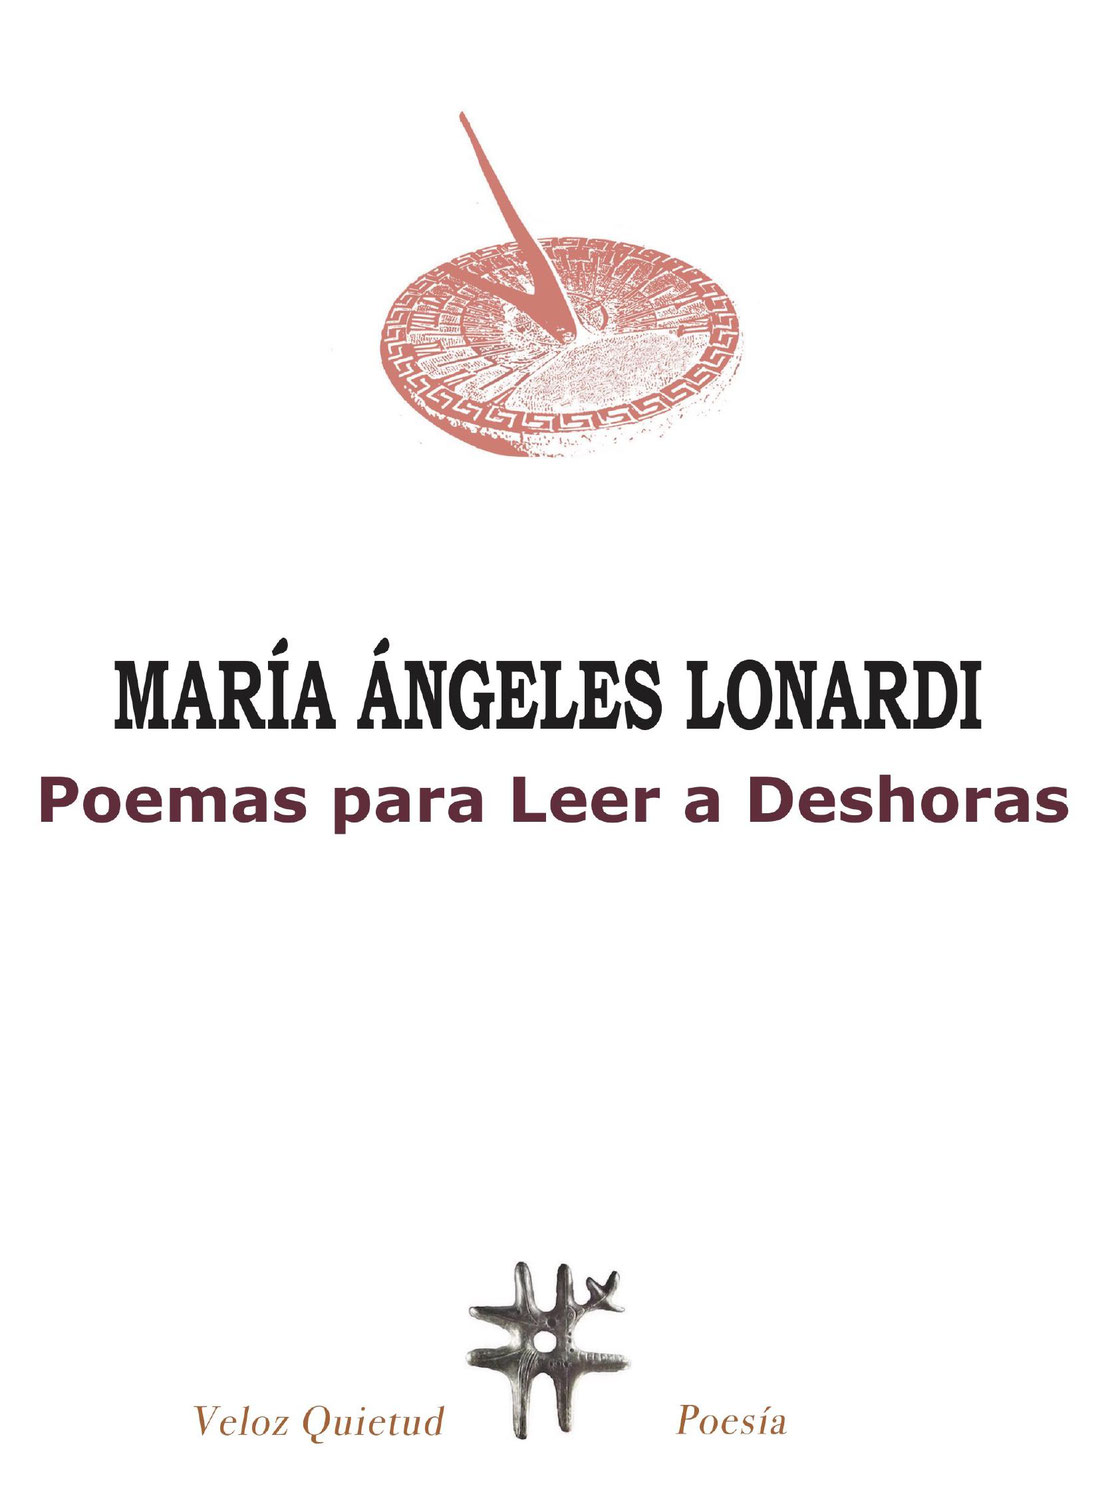 Reseña al libro Poemas para leer a deshoras de Mariángeles Lonardi, por Antonio Duque Lara